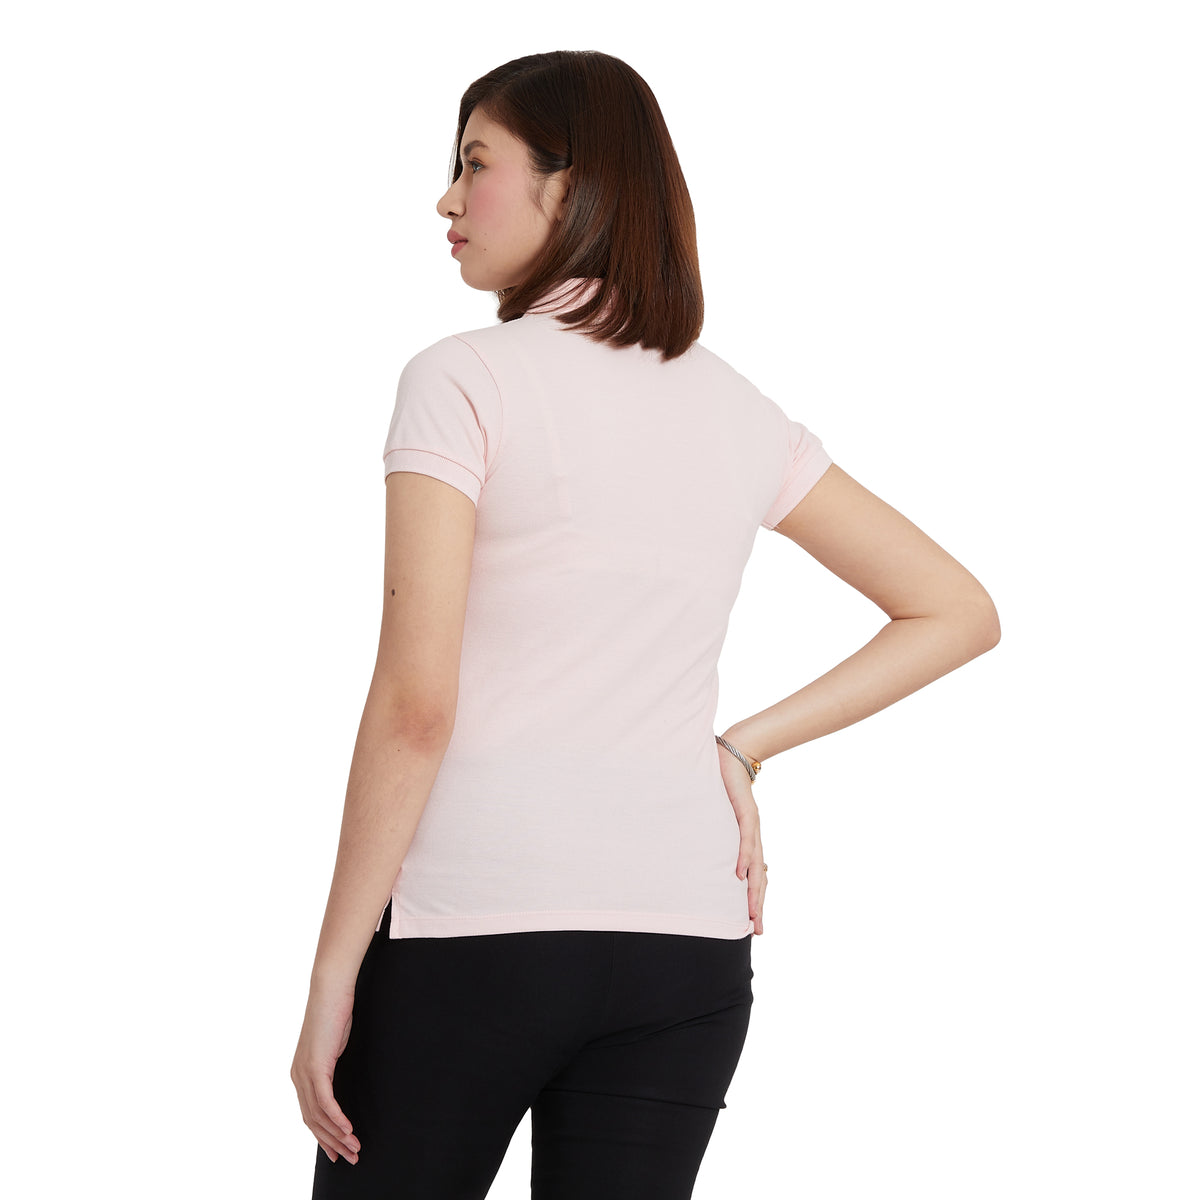 Cubic Ladies Plain Basic Collar Shirt  Pique Polo Shirt Polo- shirt - CLB-PS